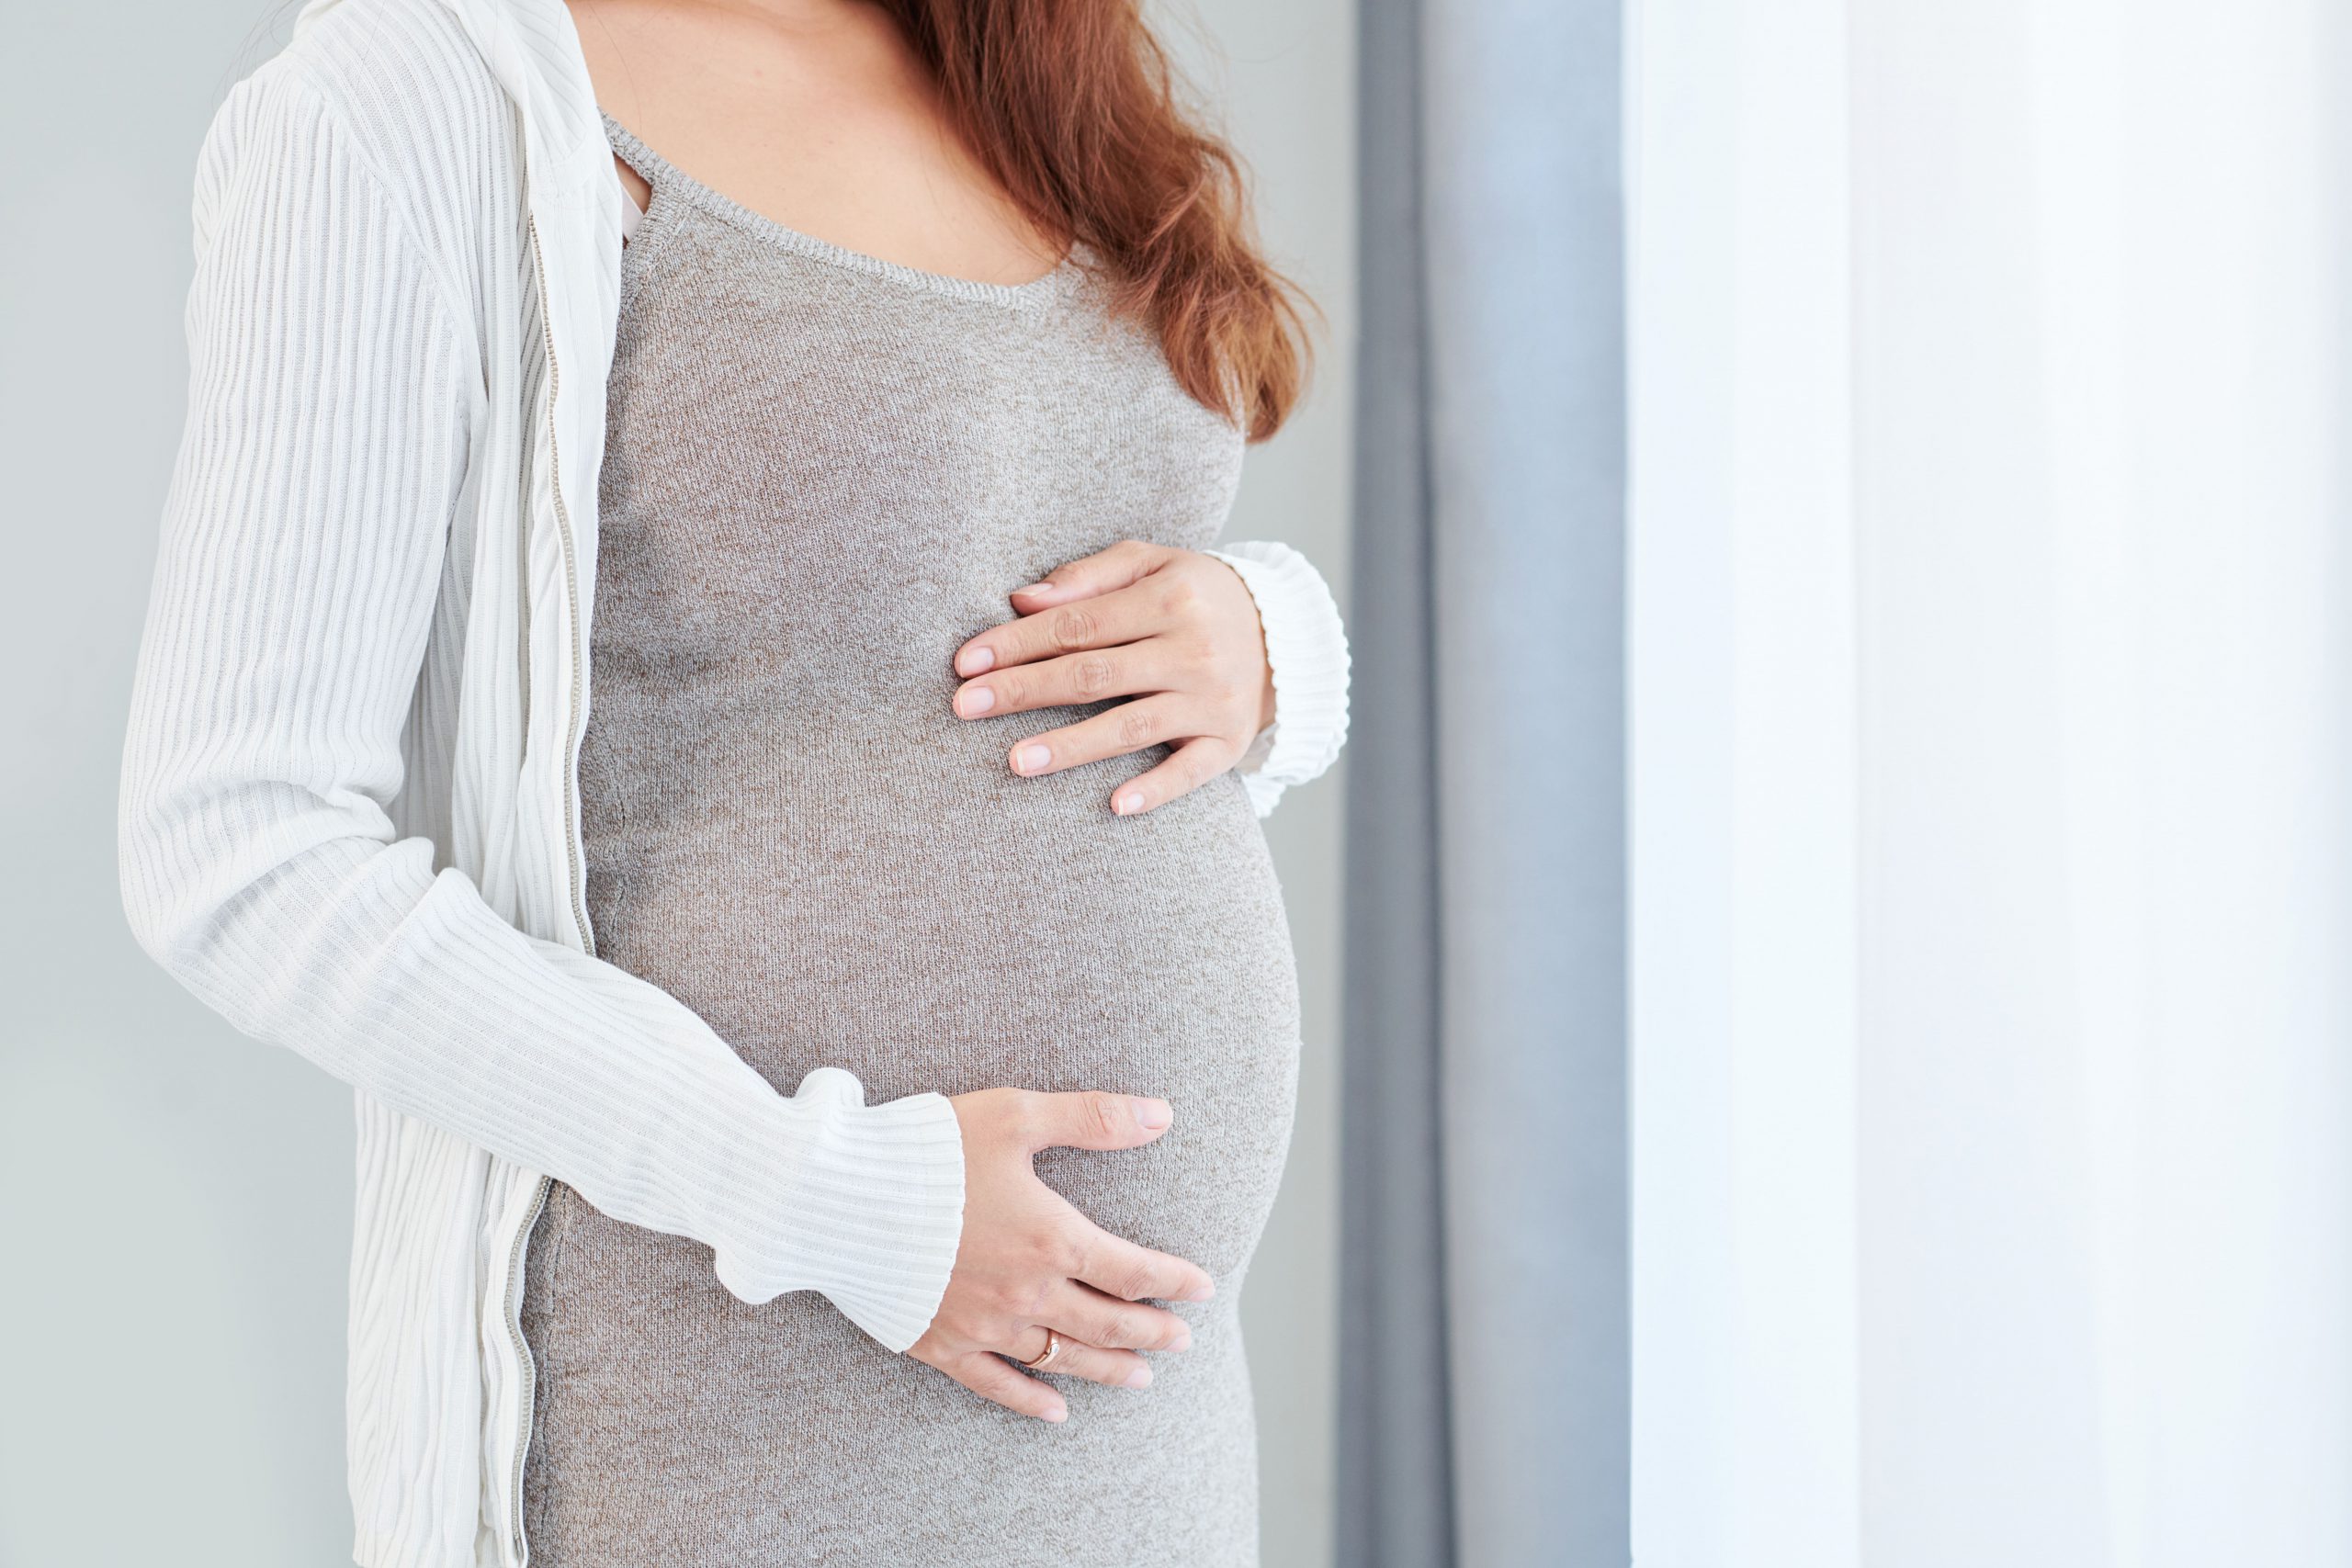 Признаки и лечение кандидоза (молочницы) при беременности в 3 триместре